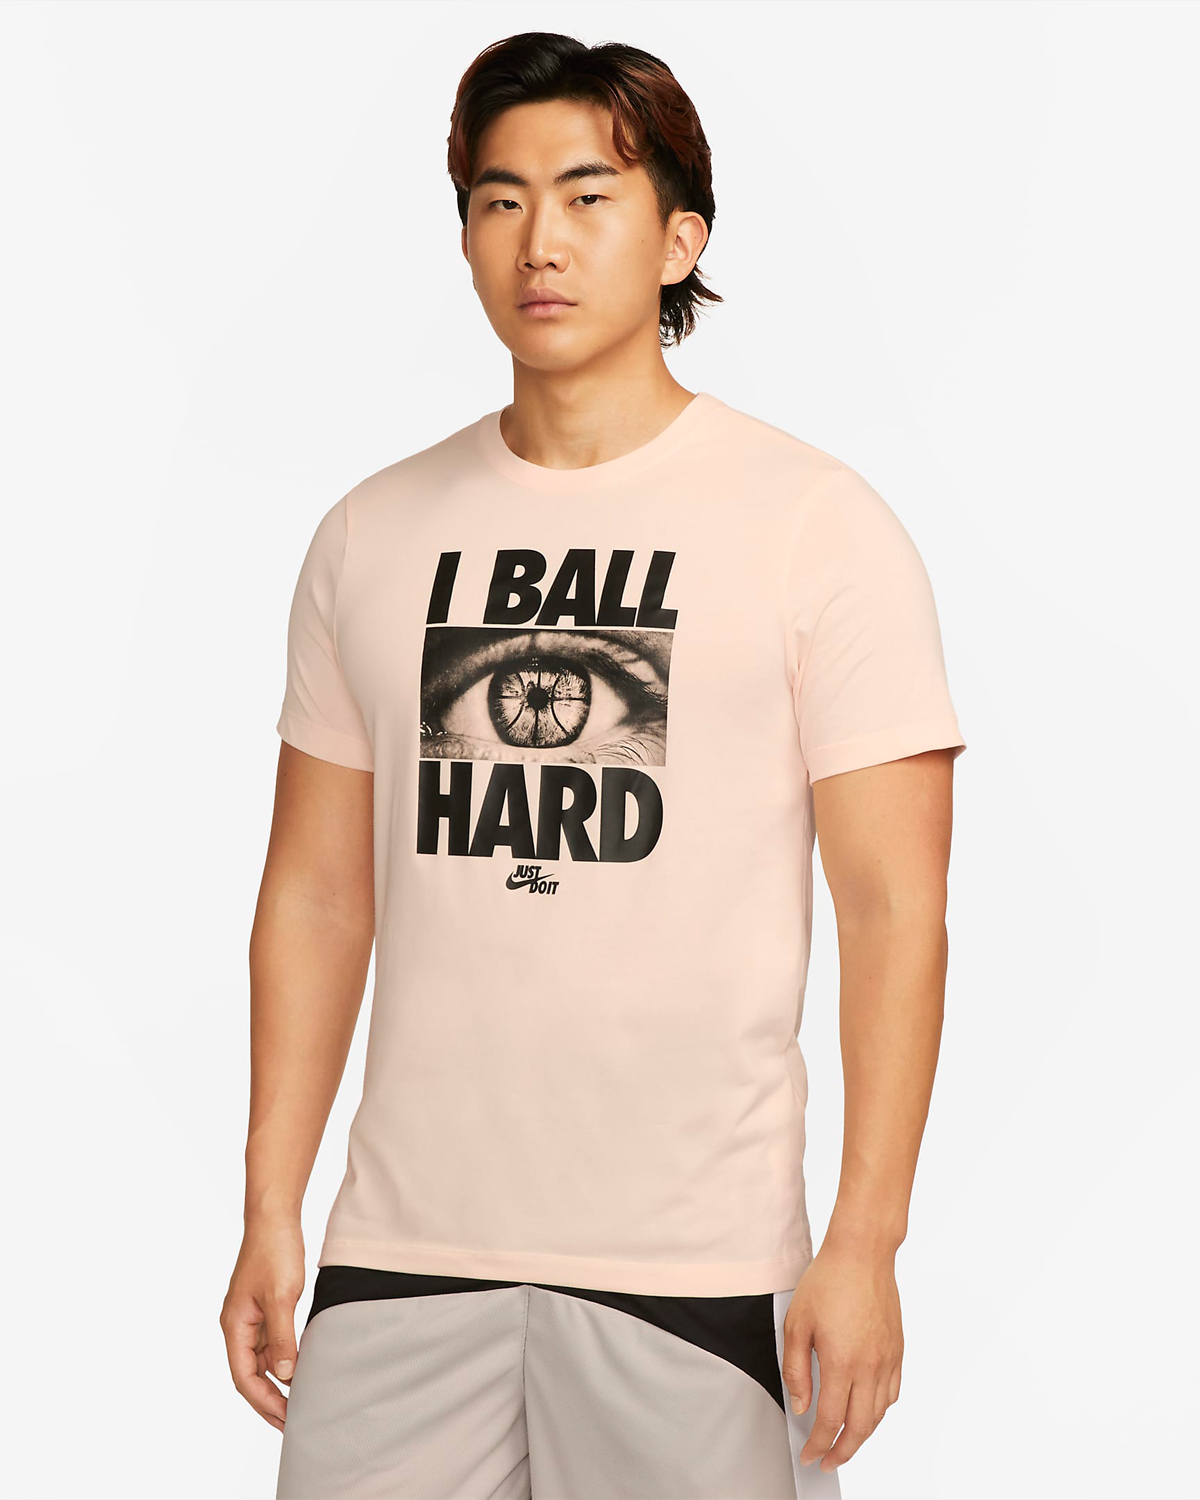 Nike-Basketball-I-Ball-Hard-T-Shirt-Guava-Ice